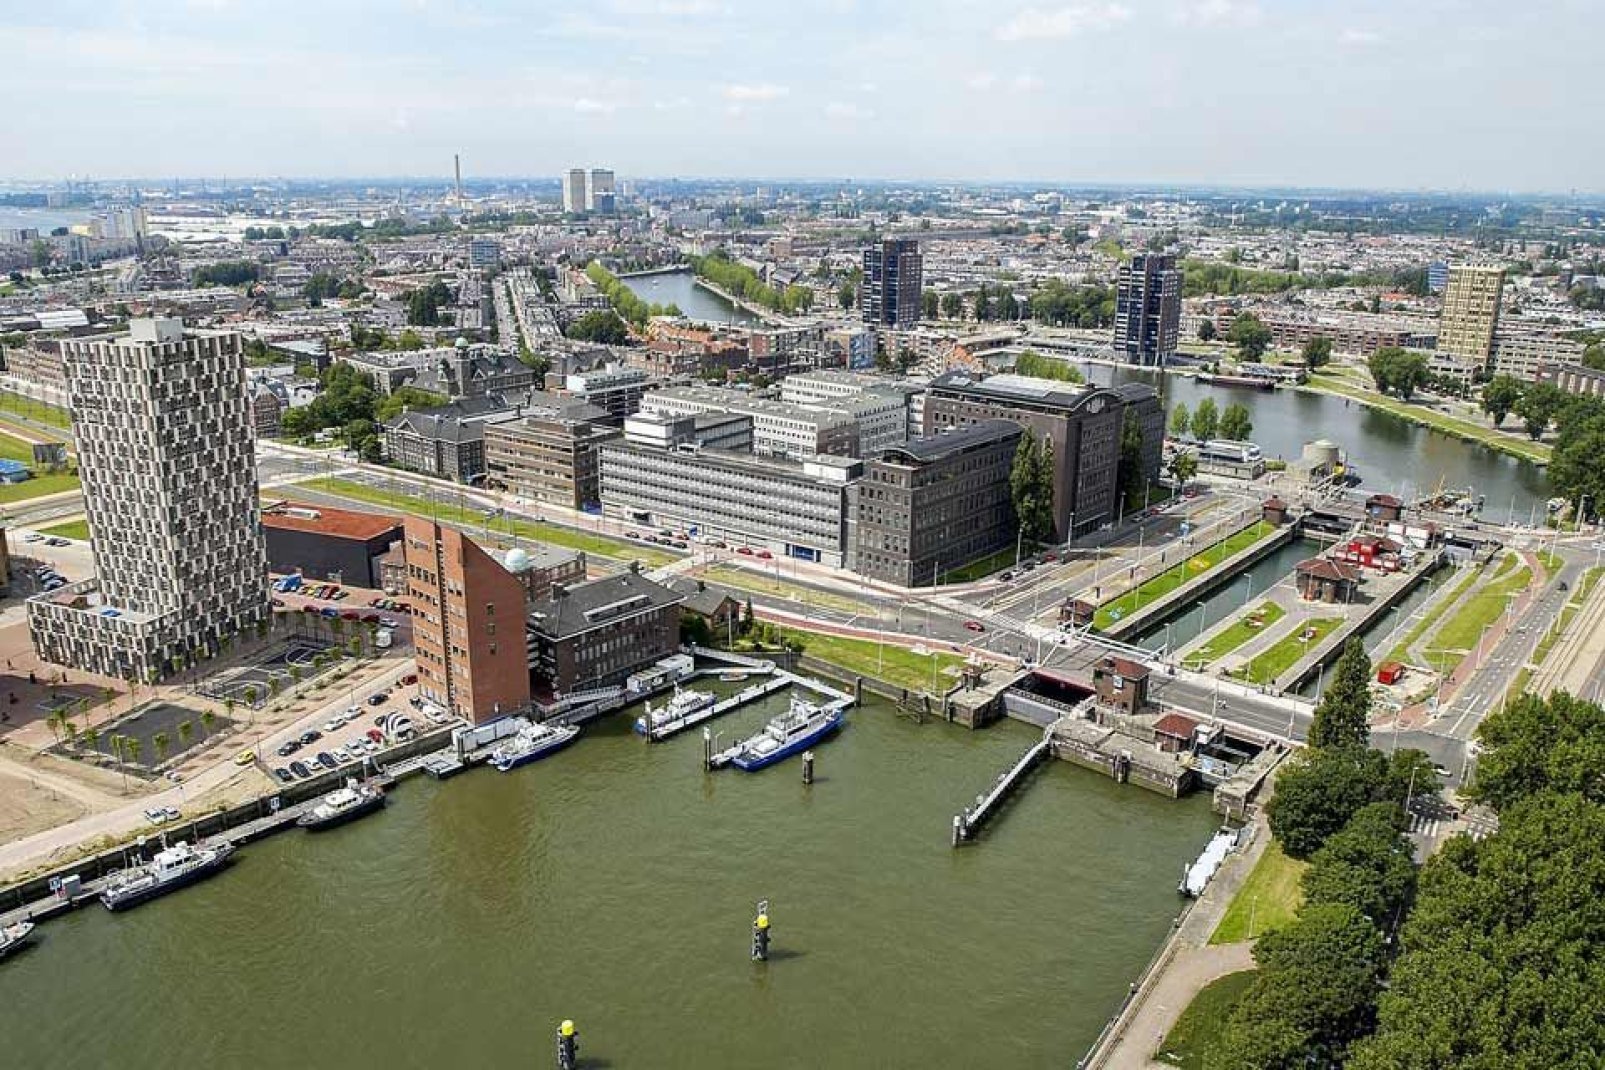 Der Hafen von Rotterdam ist der wichtigste Hafen von Europa und der drittwichtigste Hafen der ganzen Welt. Nur die Häfen der chinesischen Städte Shanghai und Singapur sind noch größer als jener von Rotterdam.